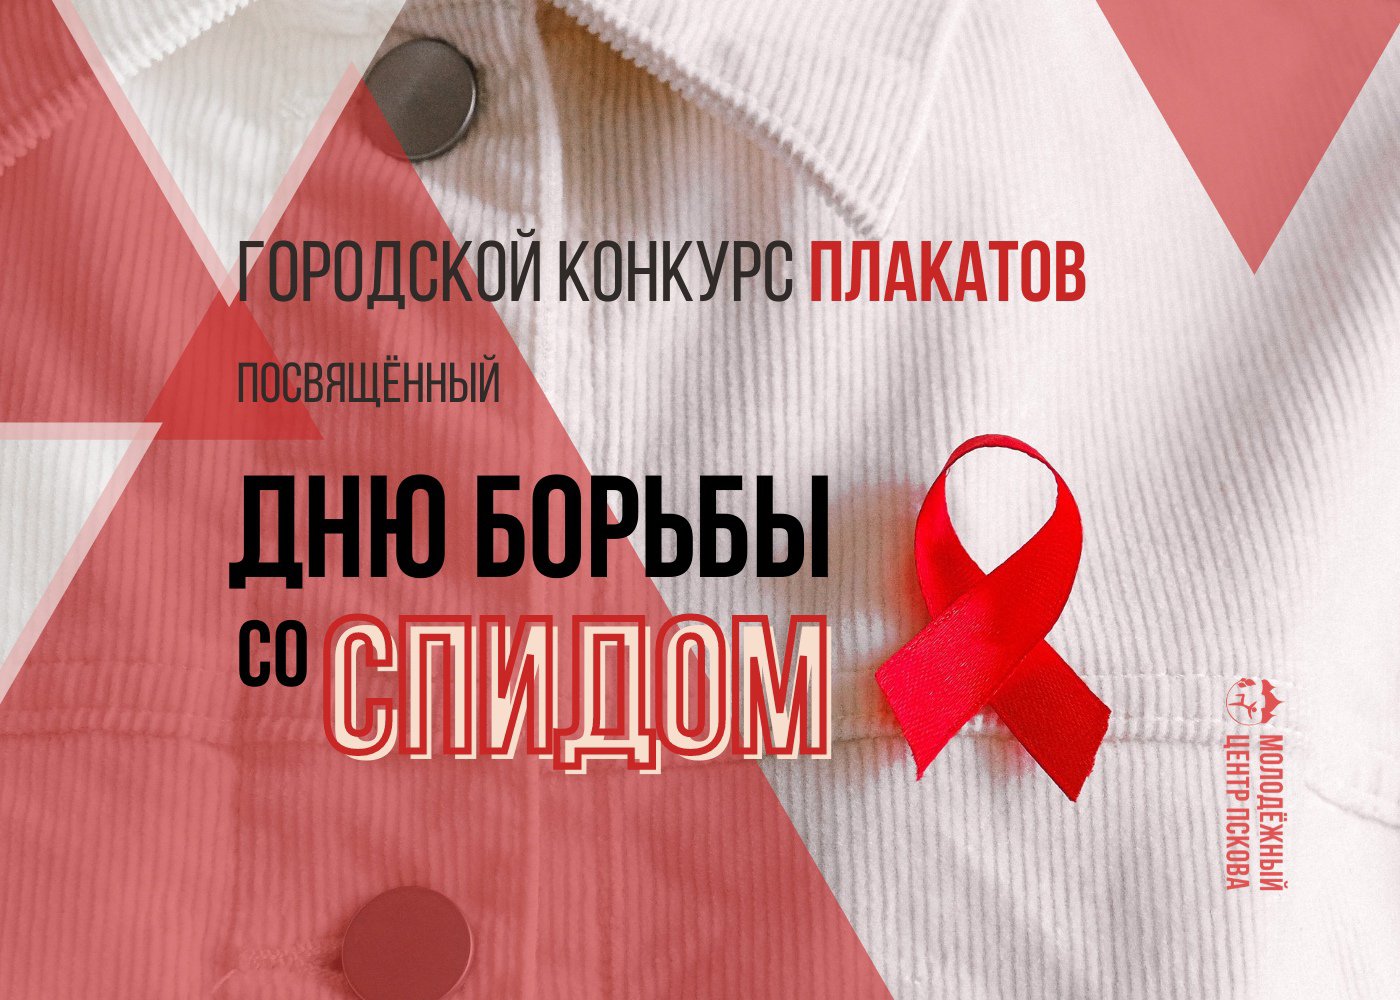 Завтра, 1 декабря, в Пскове стартует Городской конкурс плакатов, посвященный Дню борьбы со СПИДом.